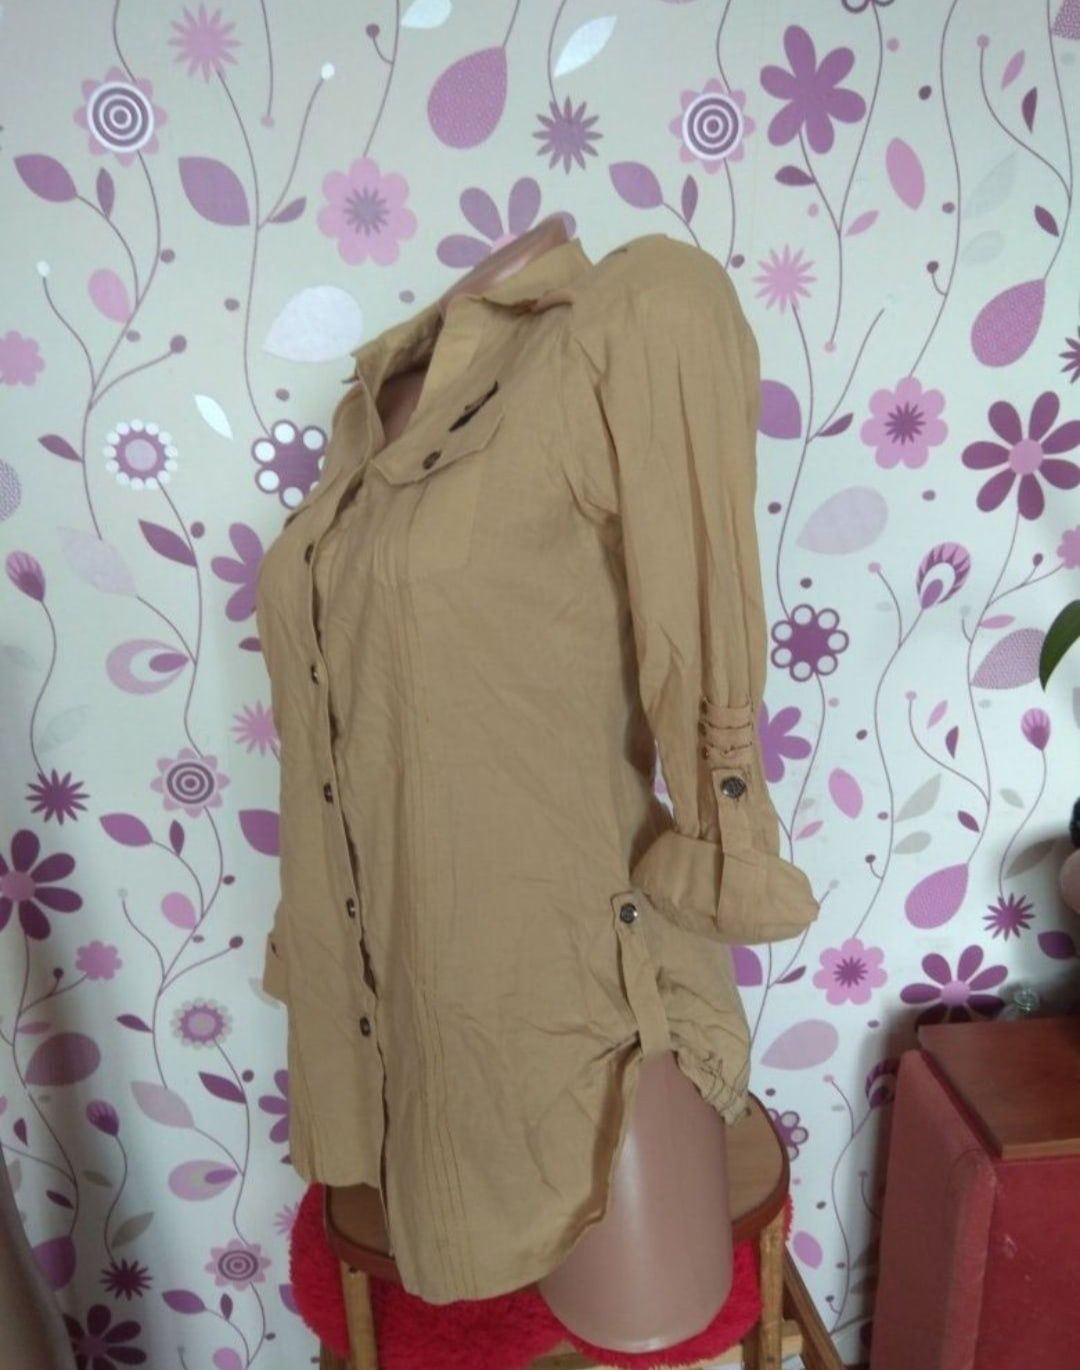 44-46 р. курточка джинсовая майка рубашка-блузка свитер кофта

В ОТЛИЧ